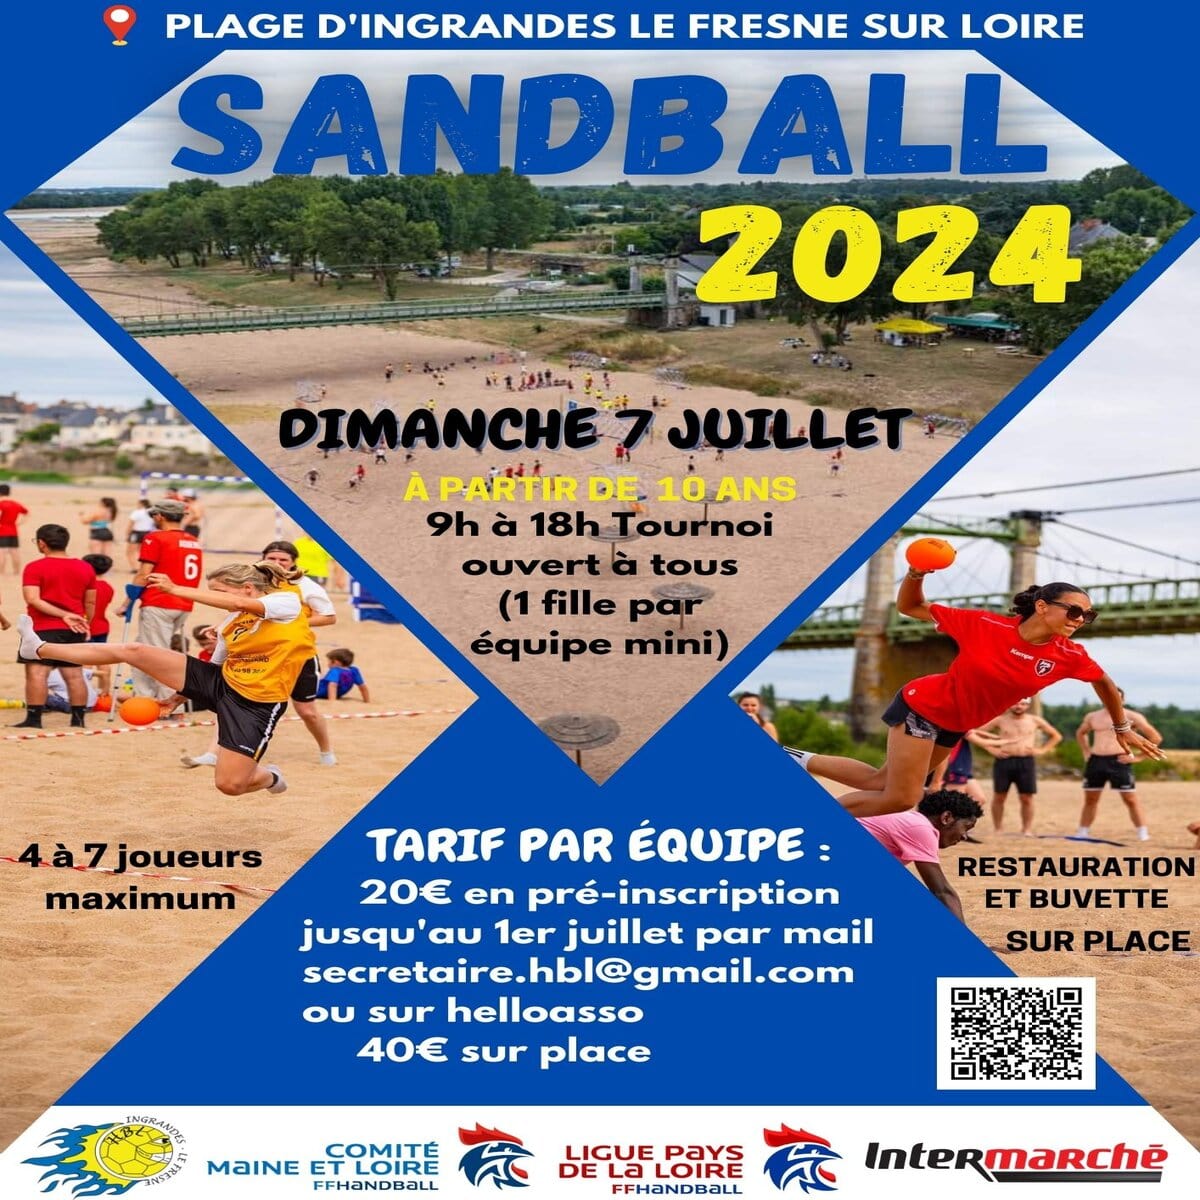 Sandball 2024 Ingrandes sur Loire